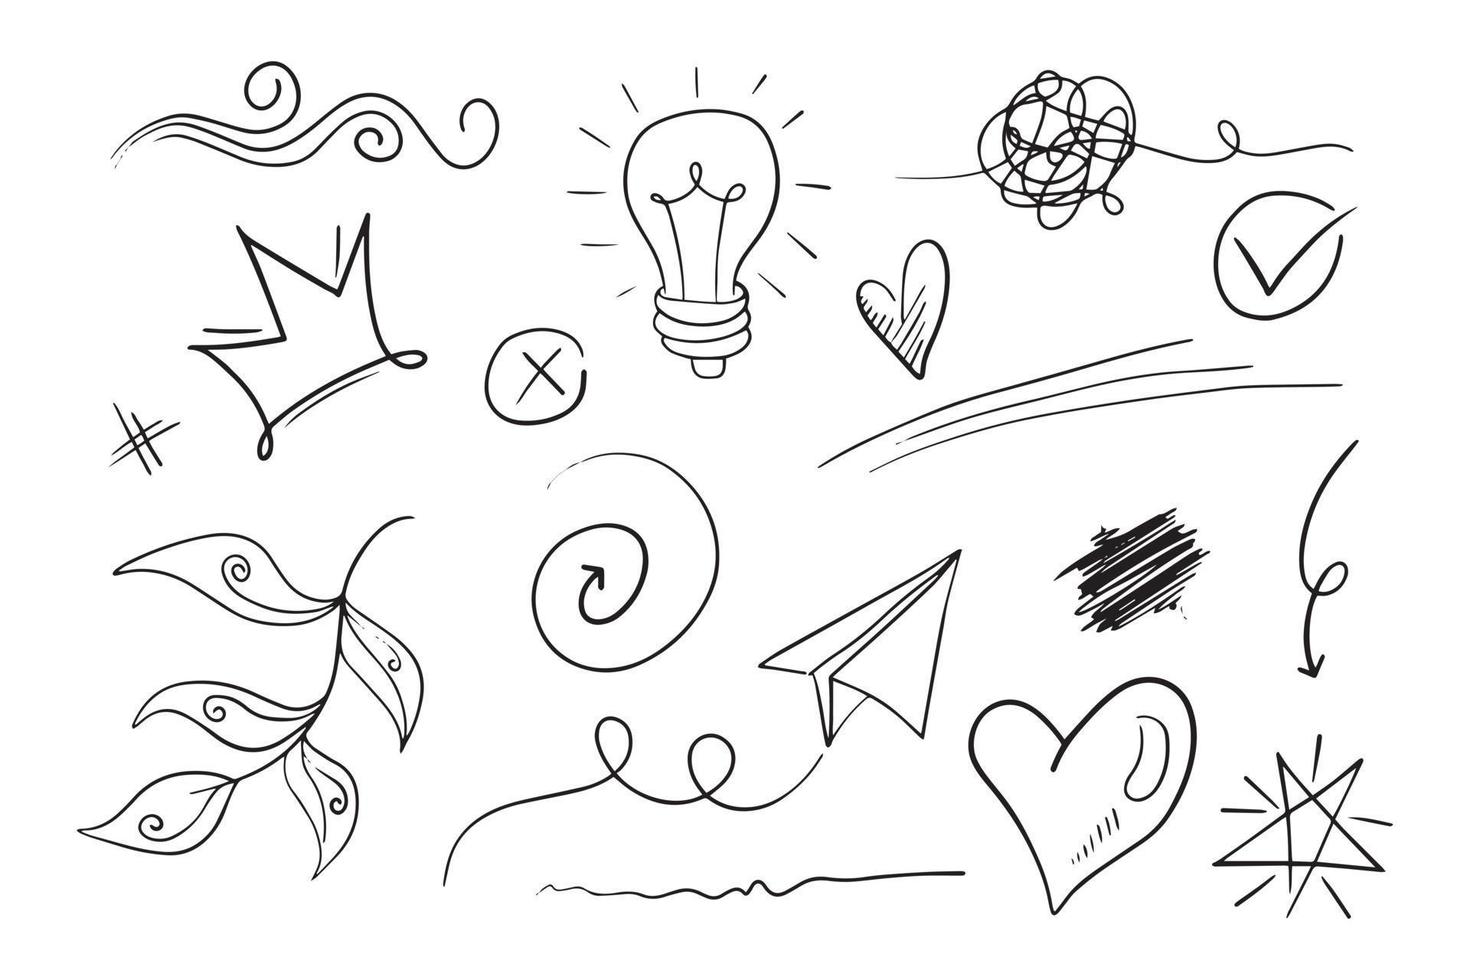 Vektor-Set von Doodle-Elementen, für Konzeptdesign. Kronen, Lichter, Papierflieger, Liebe, Verwicklungen usw. vektor